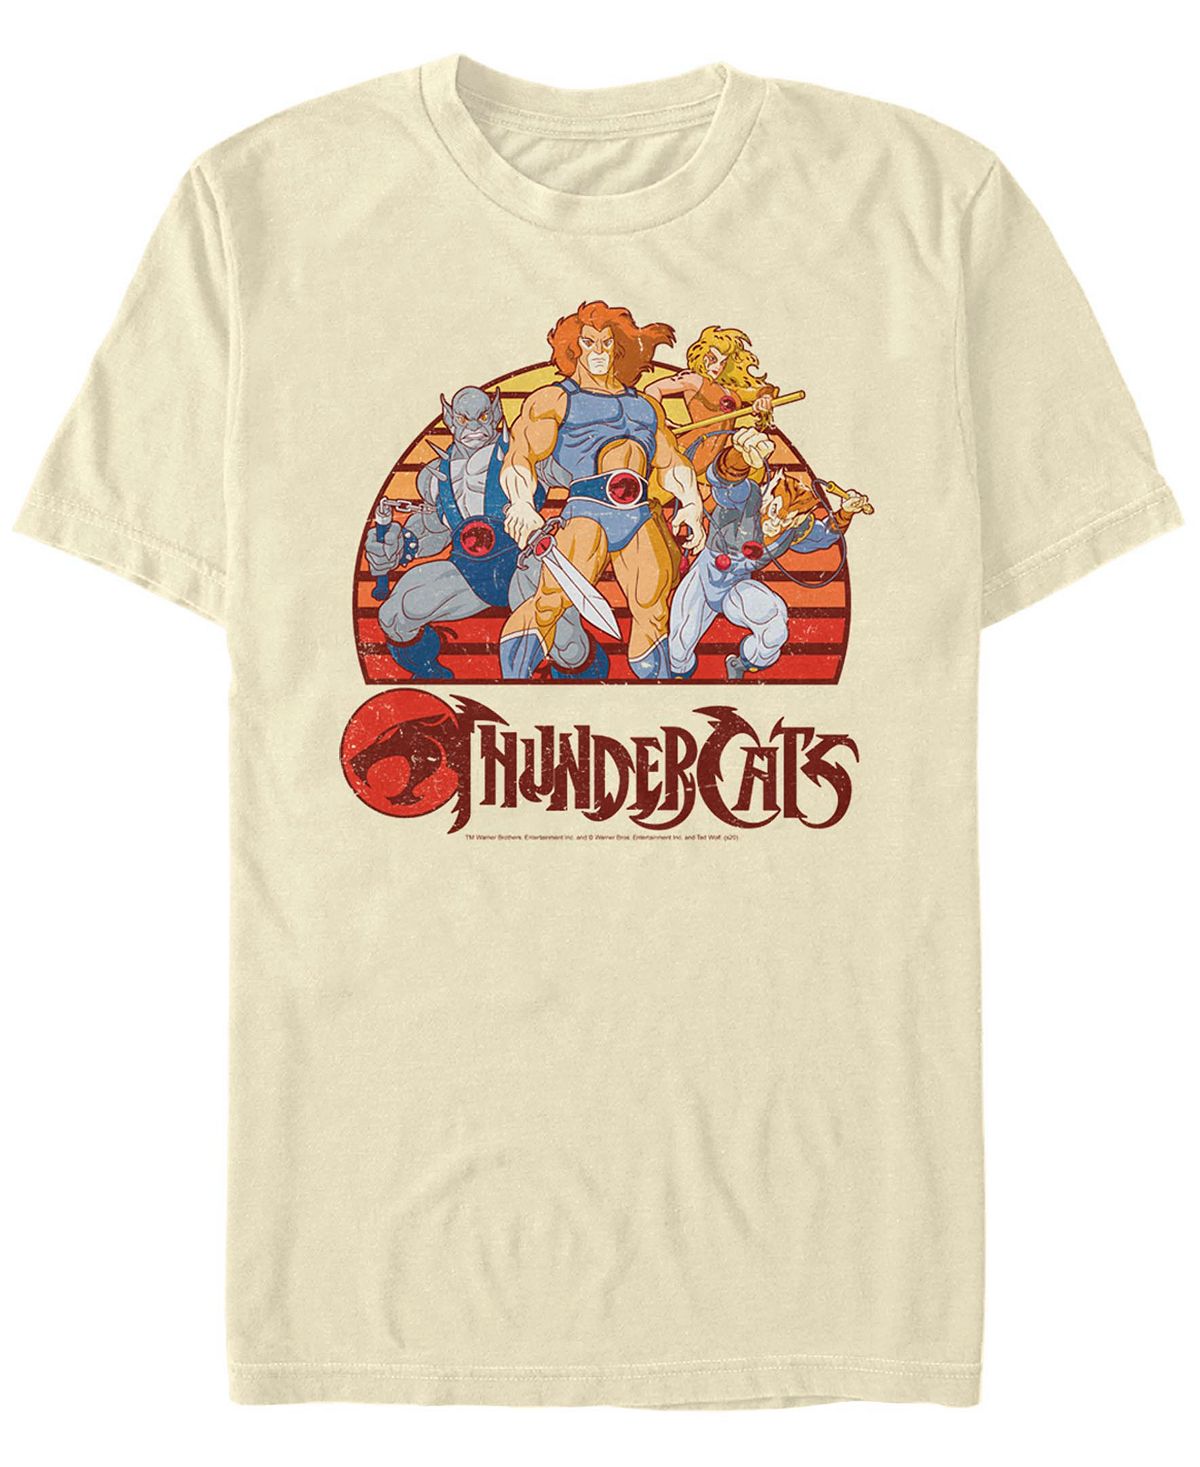 Мужская футболка thundercats group retro sunset с коротким рукавом Fifth Sun thundercat thundercat apocalypse 2 lp